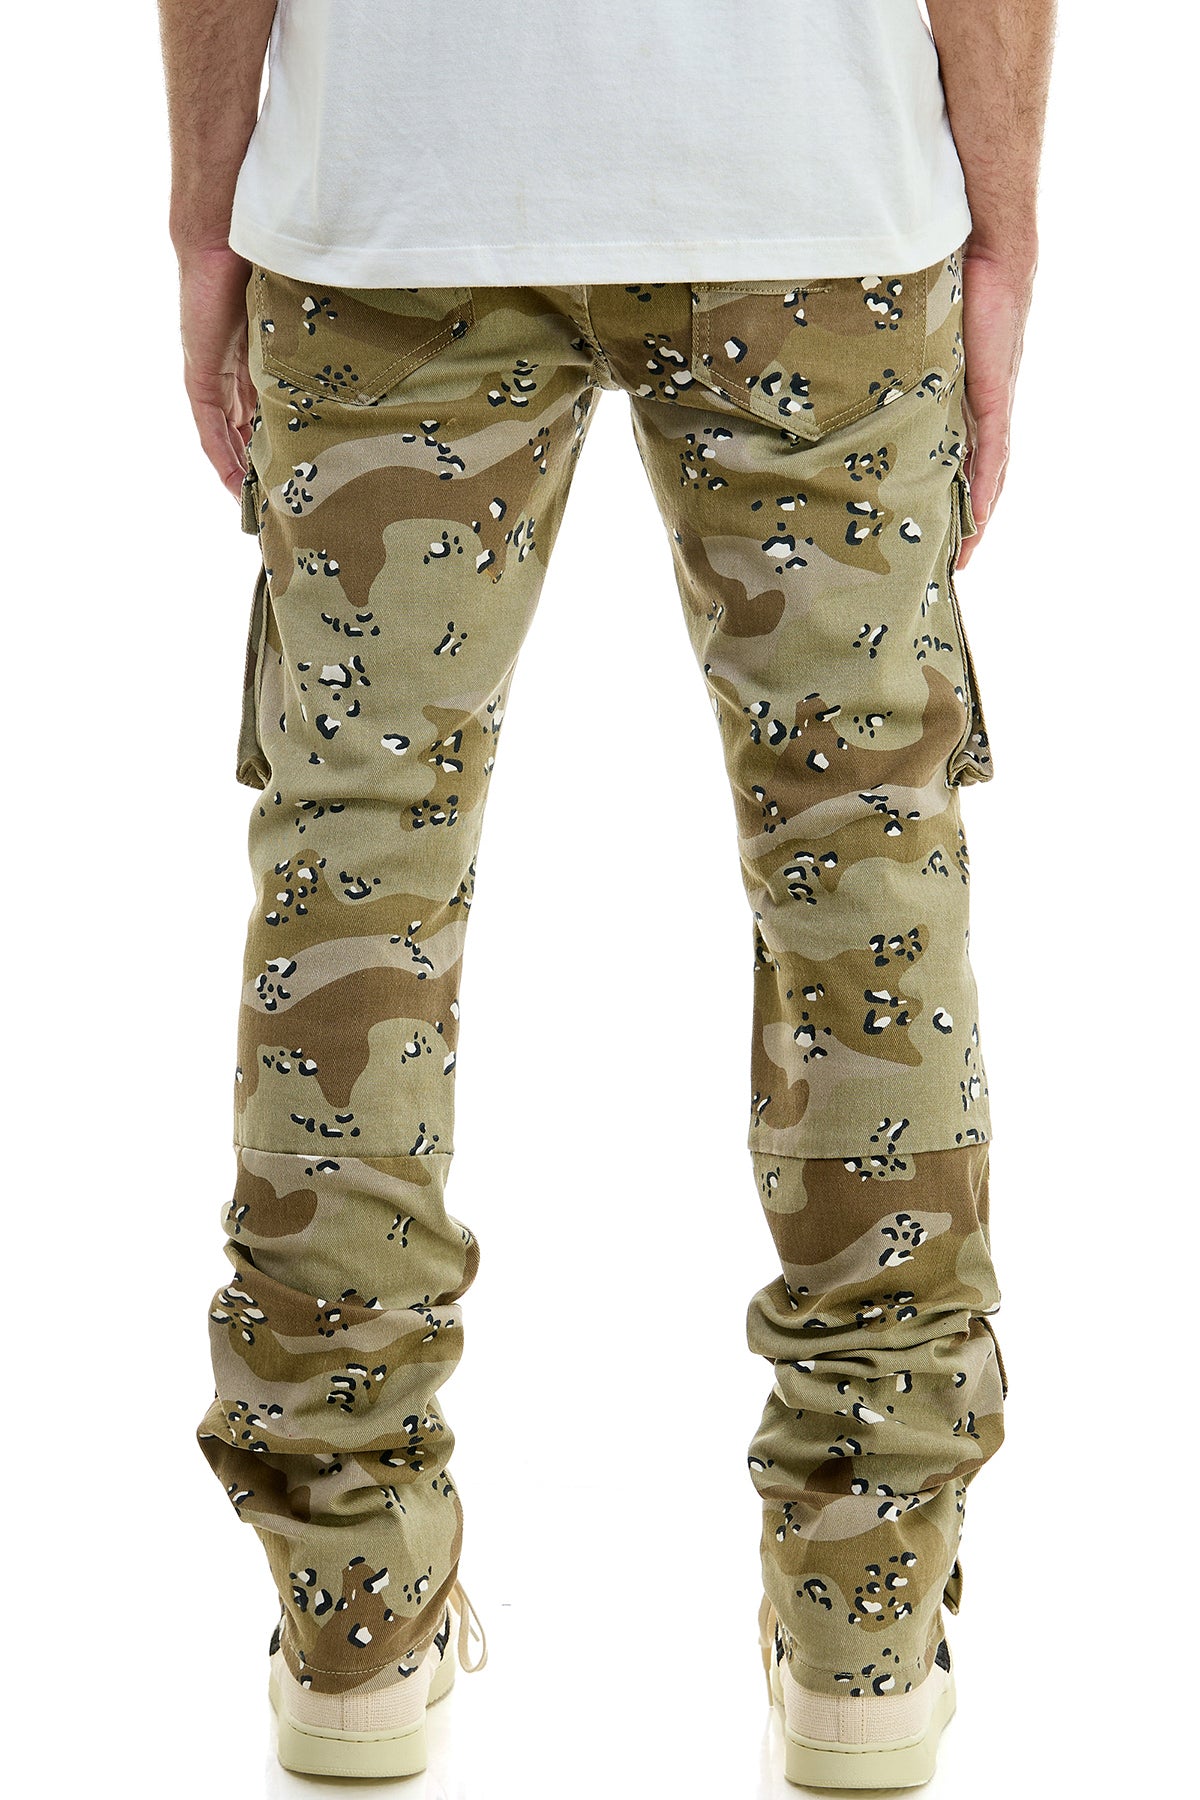 Men's Cargo & Paratrooper Pants